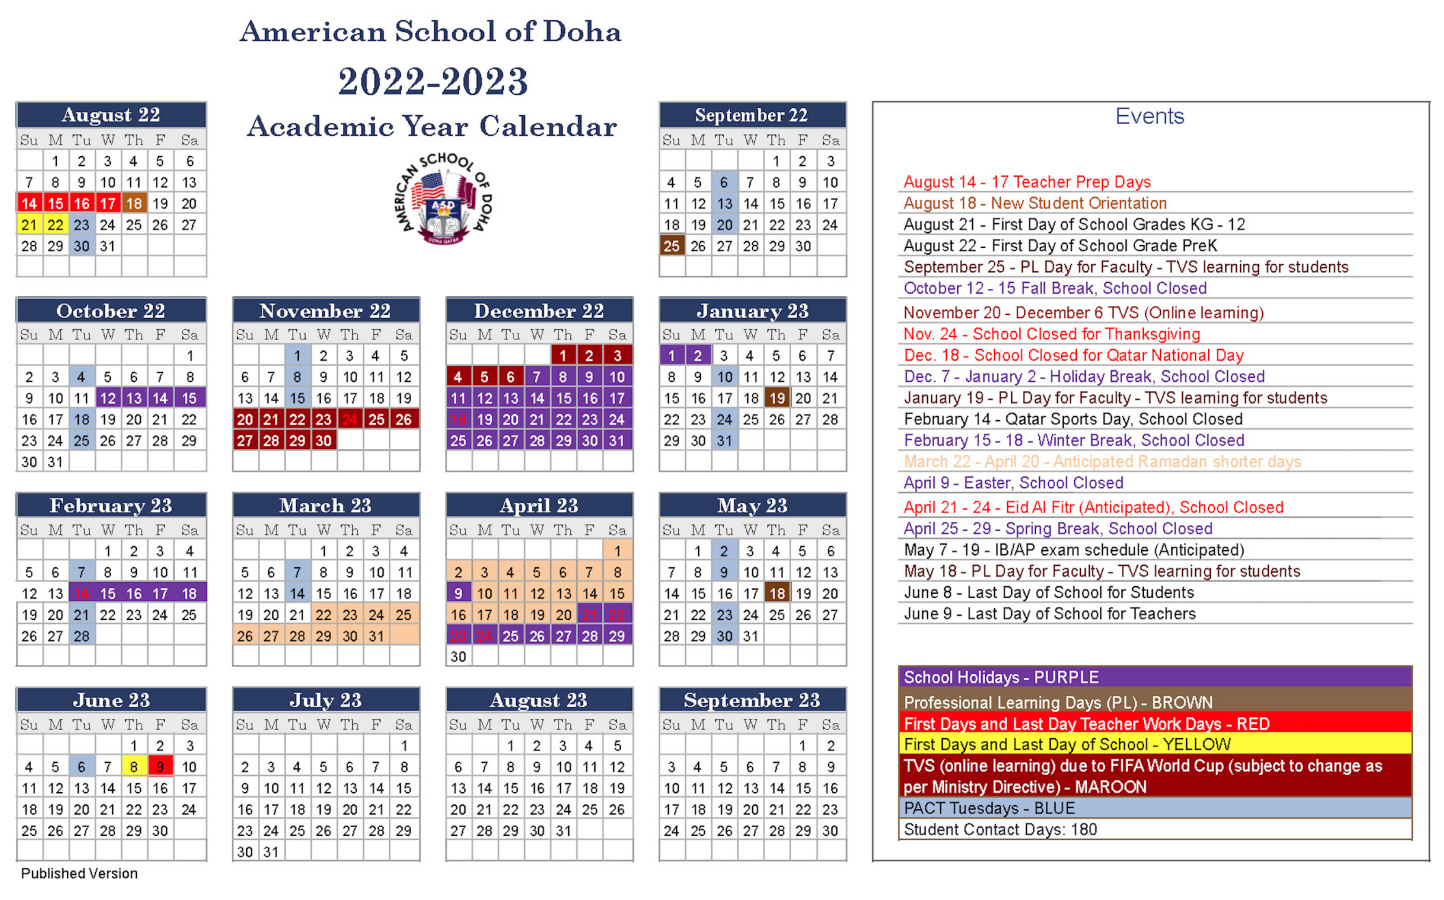 asd-calendar-published-version-american-school-of-doha-international-school-in-qatar